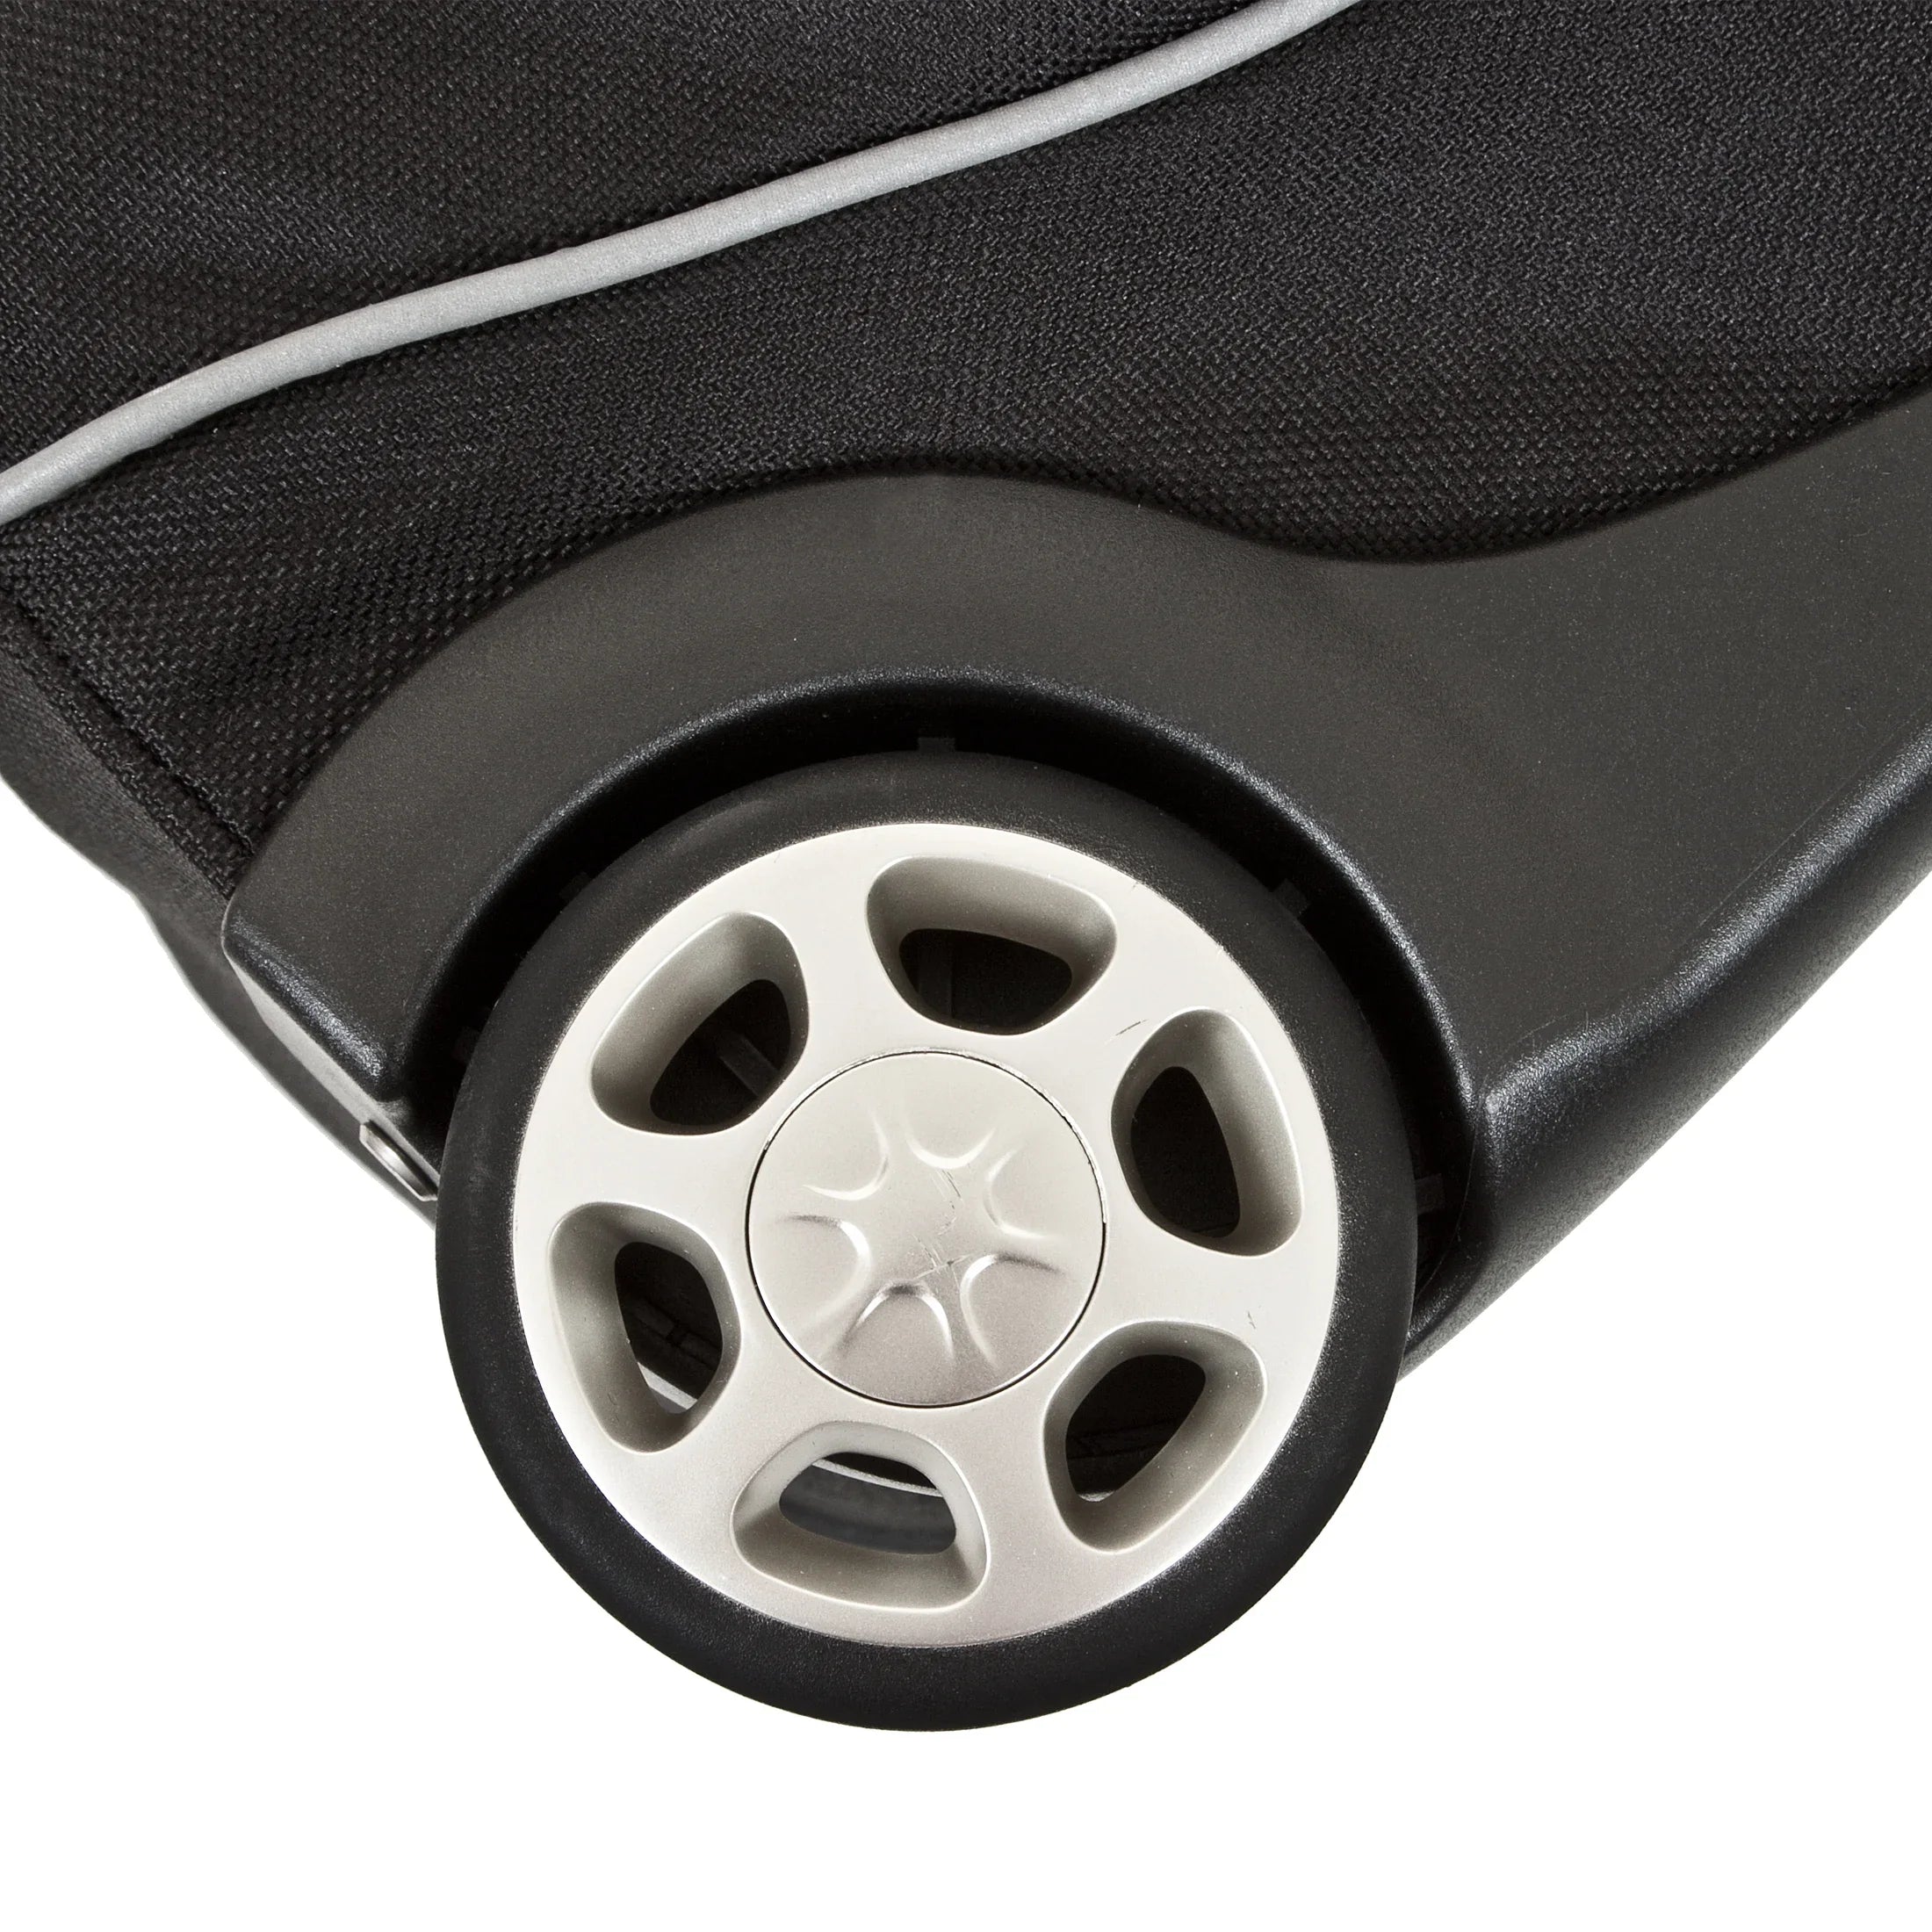 Dermata travel roller travel bag with backpack function 96 cm - black